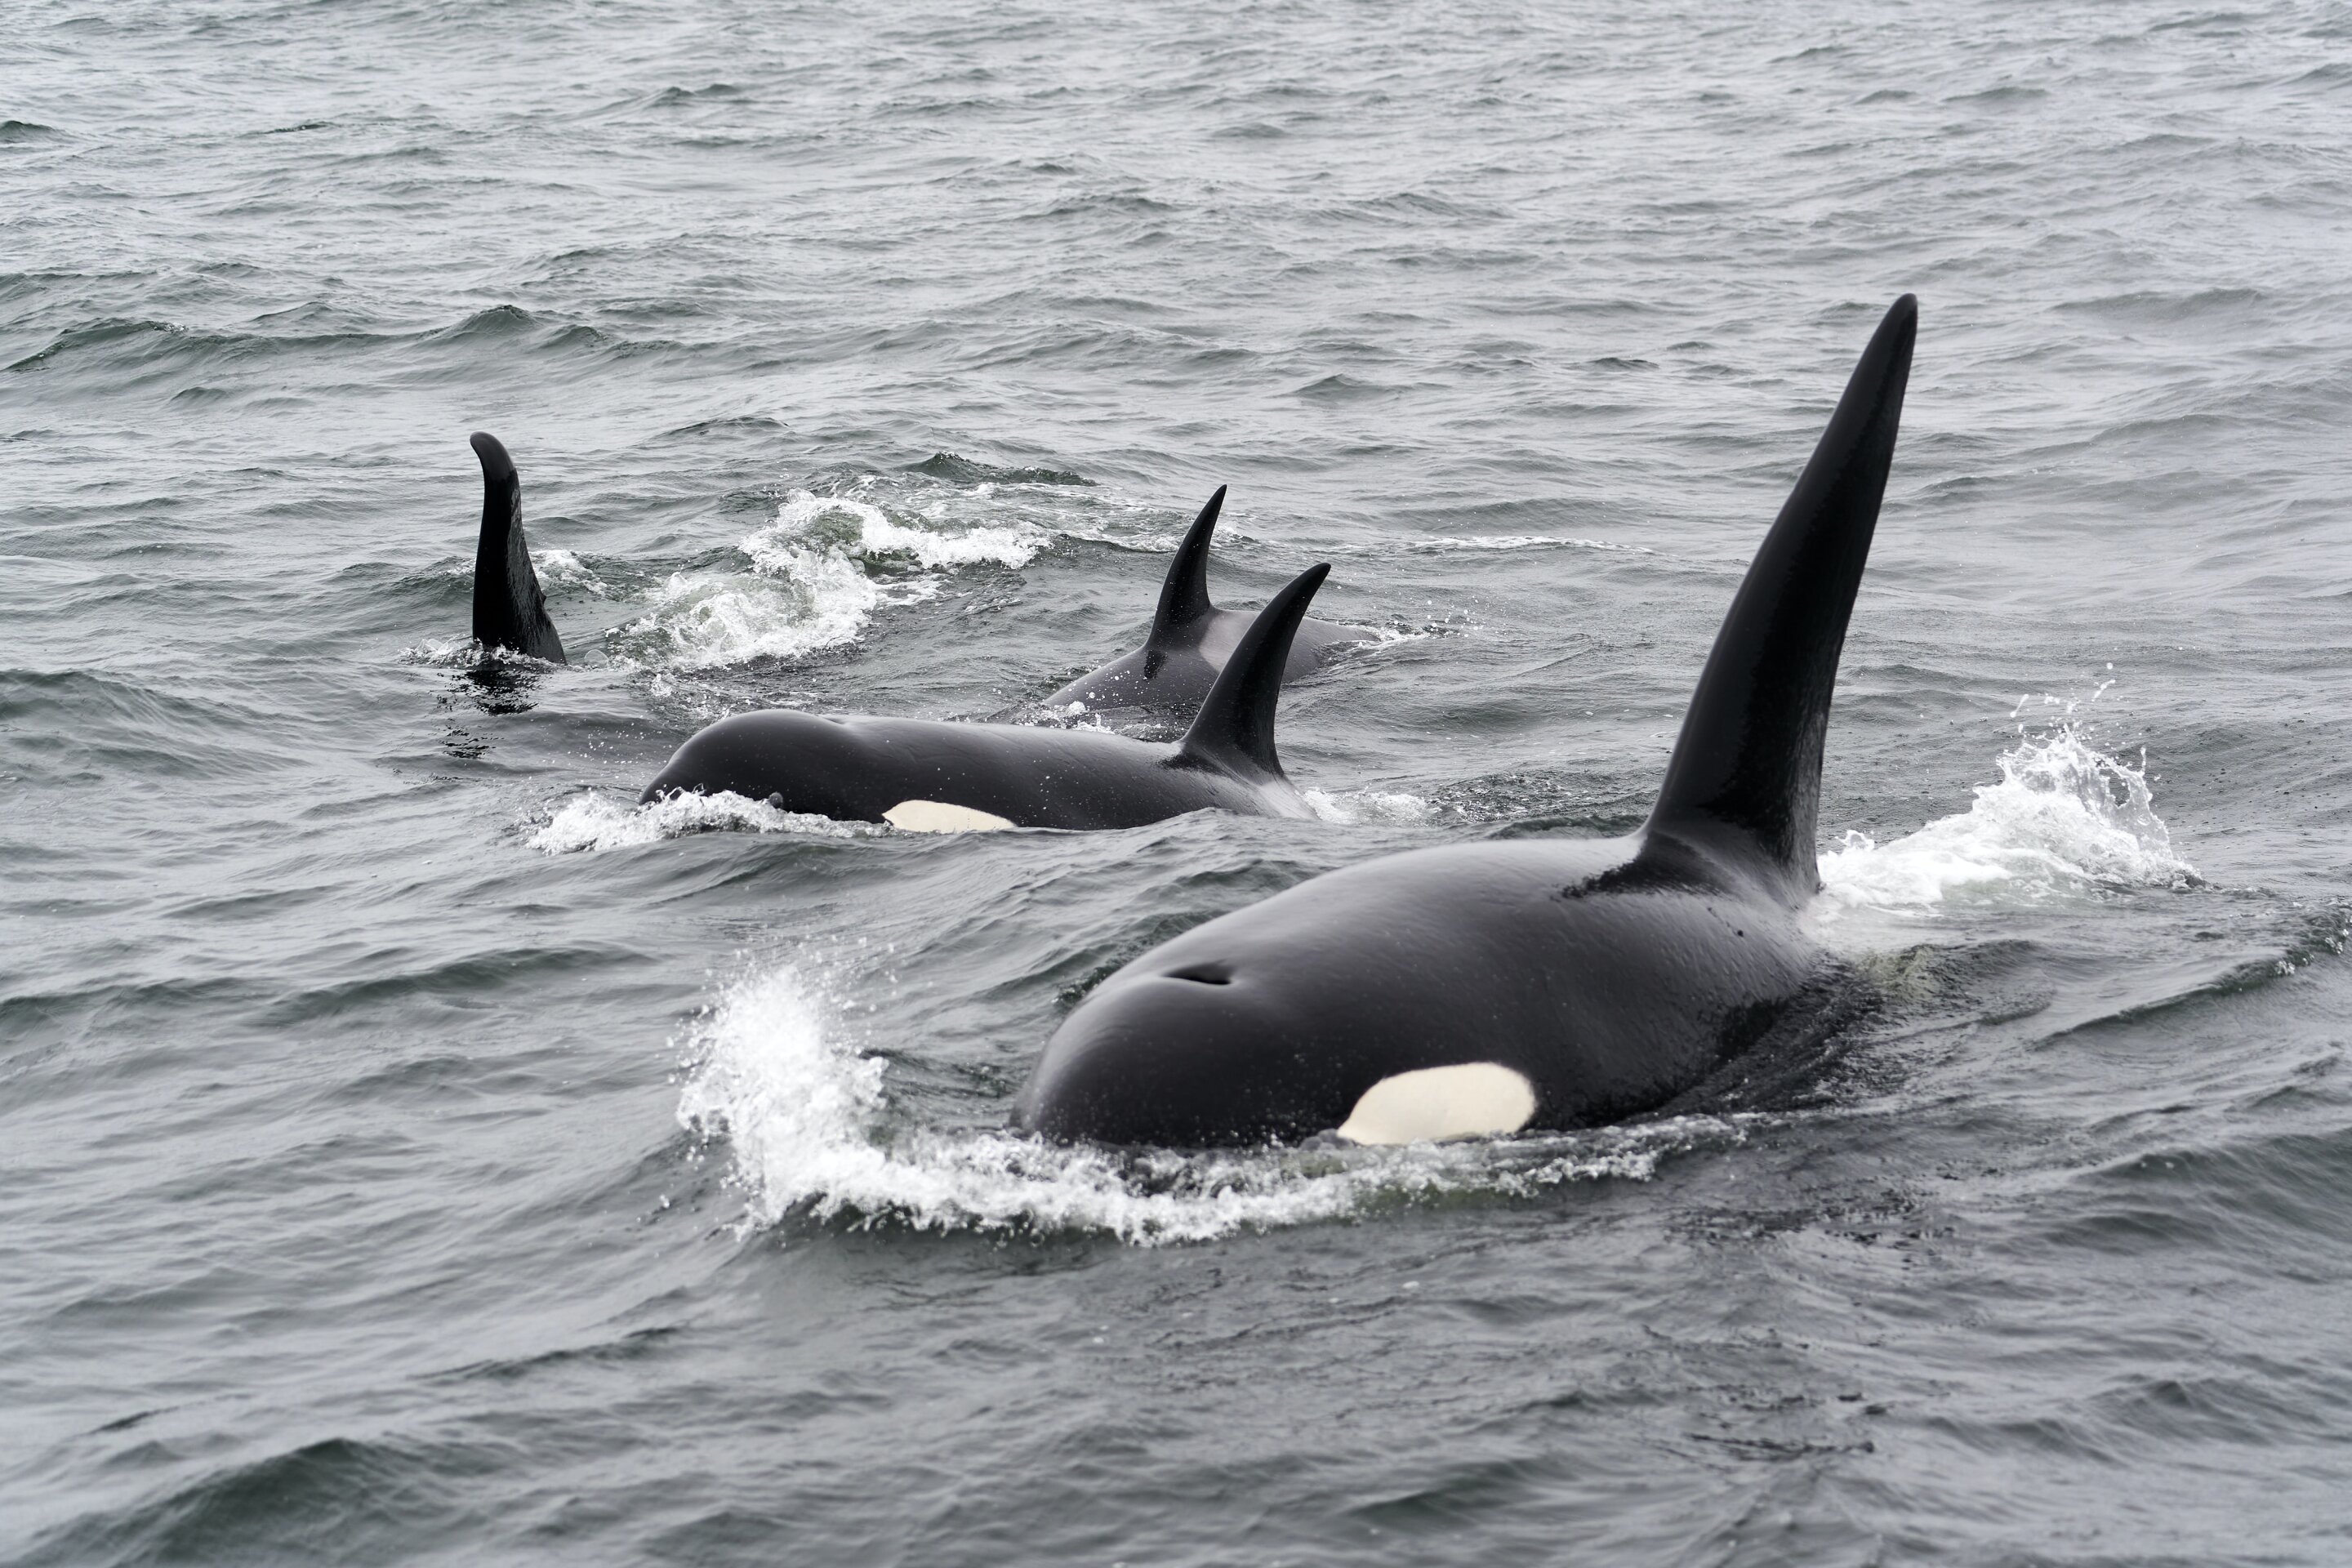 新的基因组测序显示近亲繁殖导致濒危虎鲸数量下降